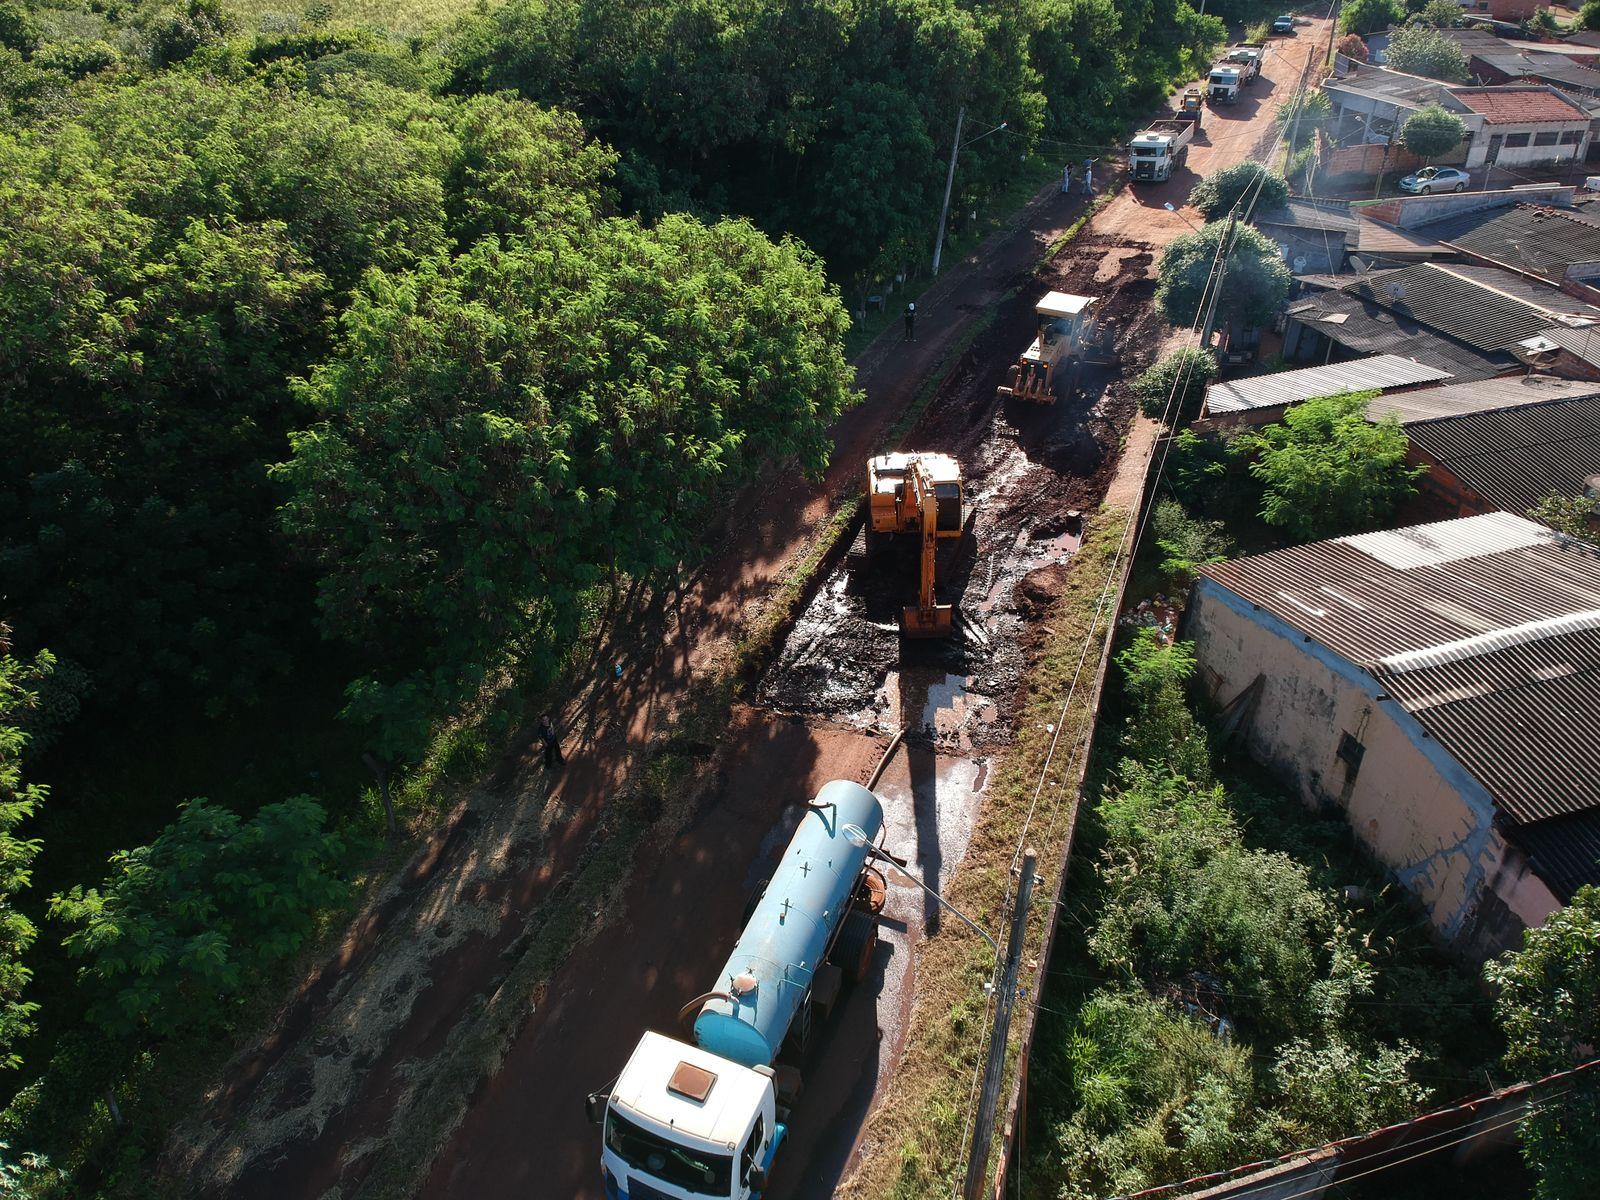 Prefeitura de Dourados inicia obra de recuperação da Via Parque no bairro Cachoeirinha